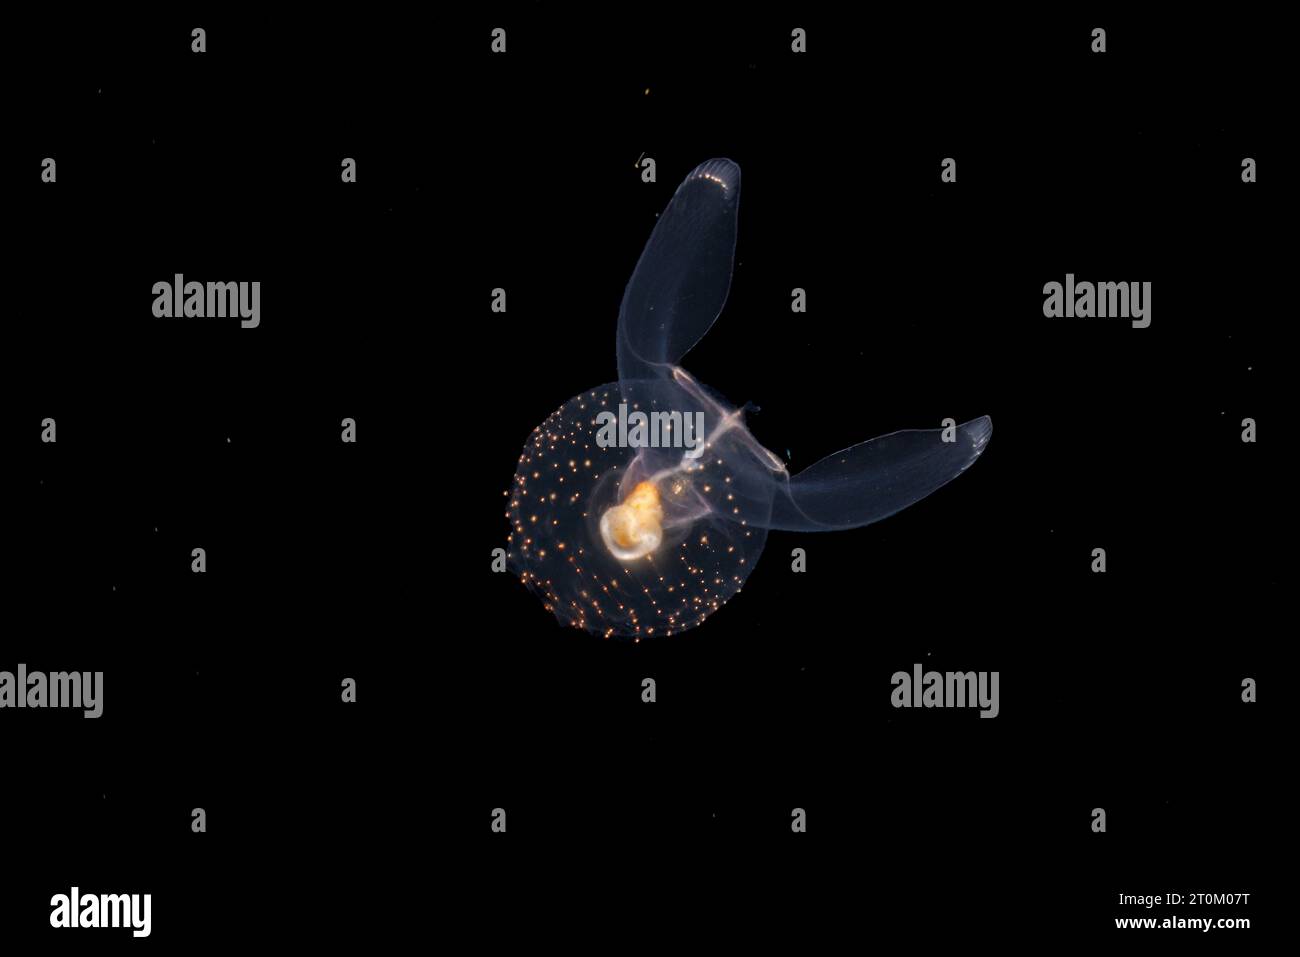 Gymnosomata connu sous le nom d'anges de mer, sont des nudibranches pélagiques. Ils sont carnivores se nourrissant d'autres ptéropodes. Photographié la nuit 40 pieds plus bas sur un bla Banque D'Images